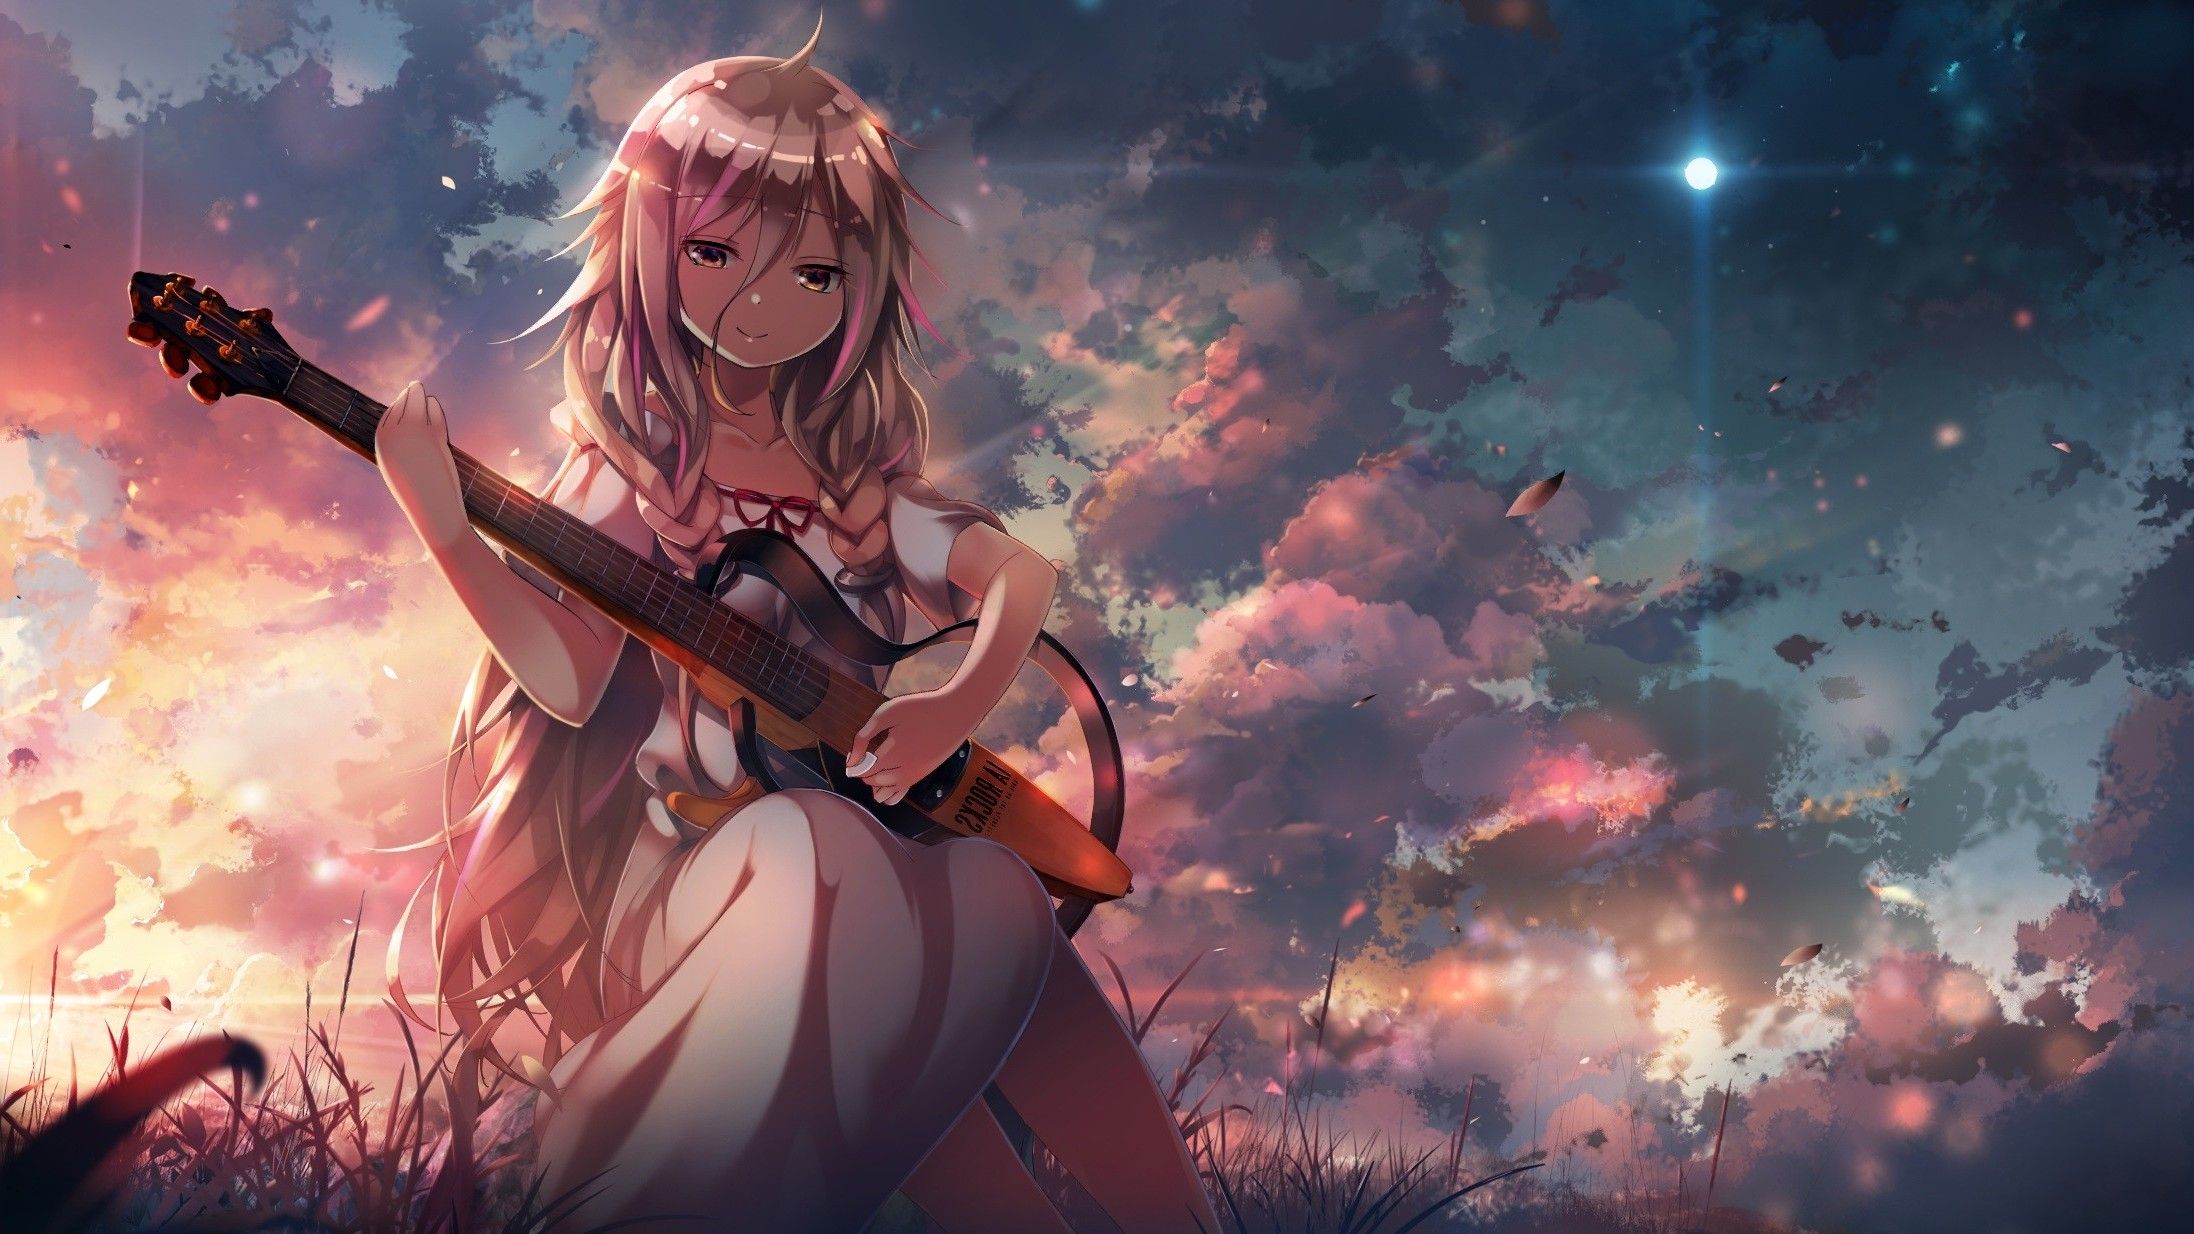 Vocaloid, Anime Girls, Guitar, IA (Vocaloid), Clouds, Grass, Sunset Wallpaper HD / Desktop and Mobile Background